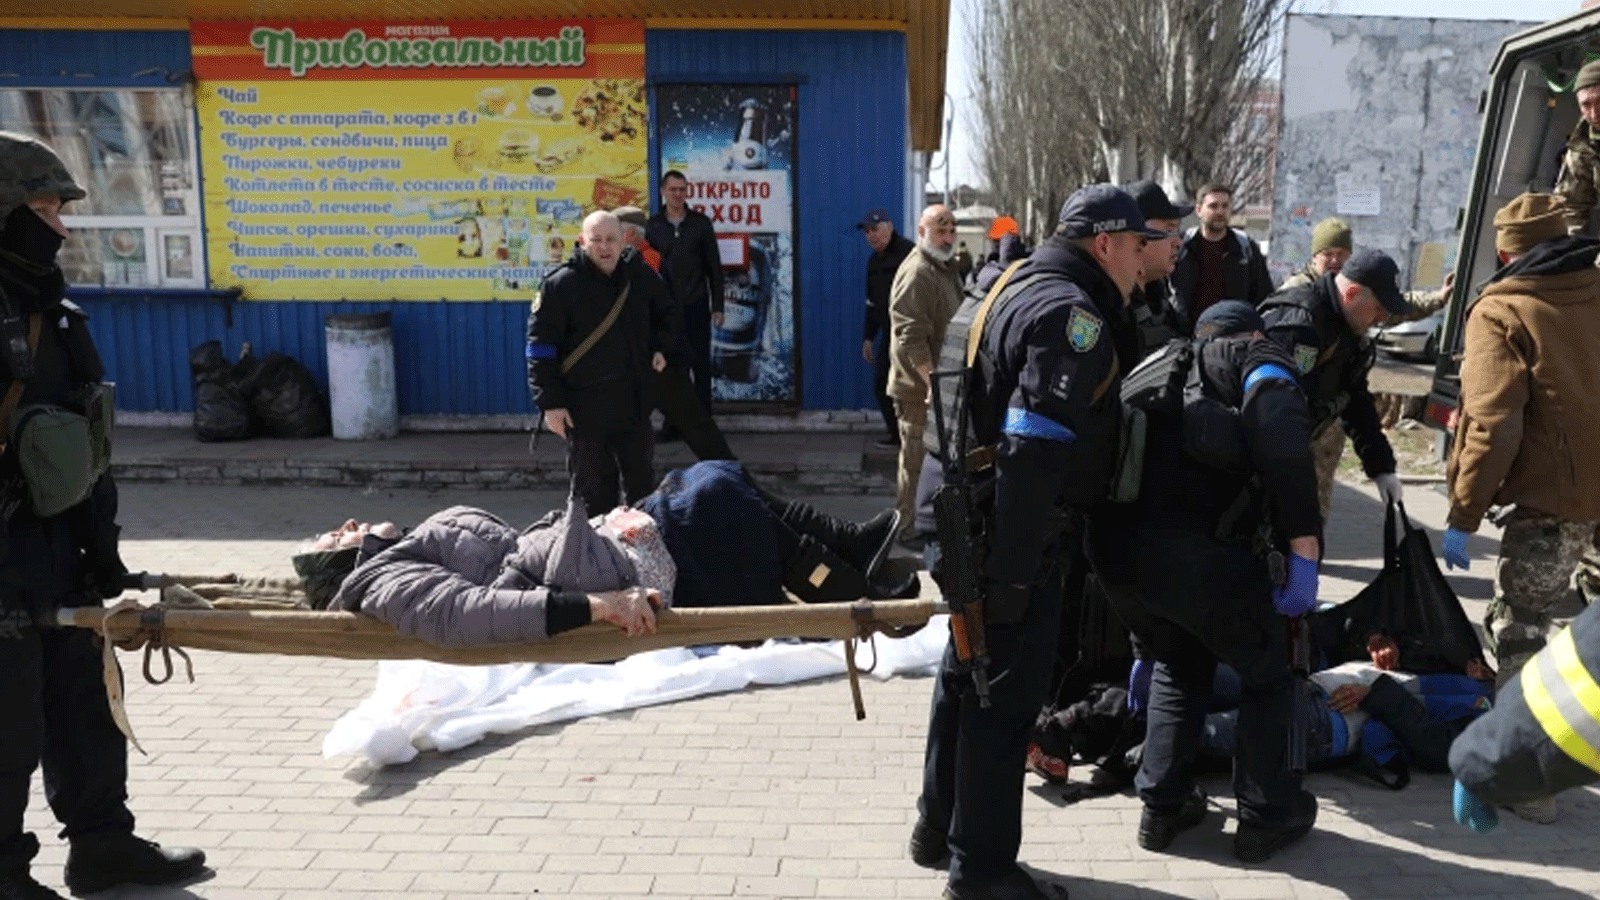 أفراد الطوارئ ينقلون الجرحى في أعقاب هجوم صاروخي على محطة السكة الحديد في مدينة كراماتورسك شرقي البلاد.